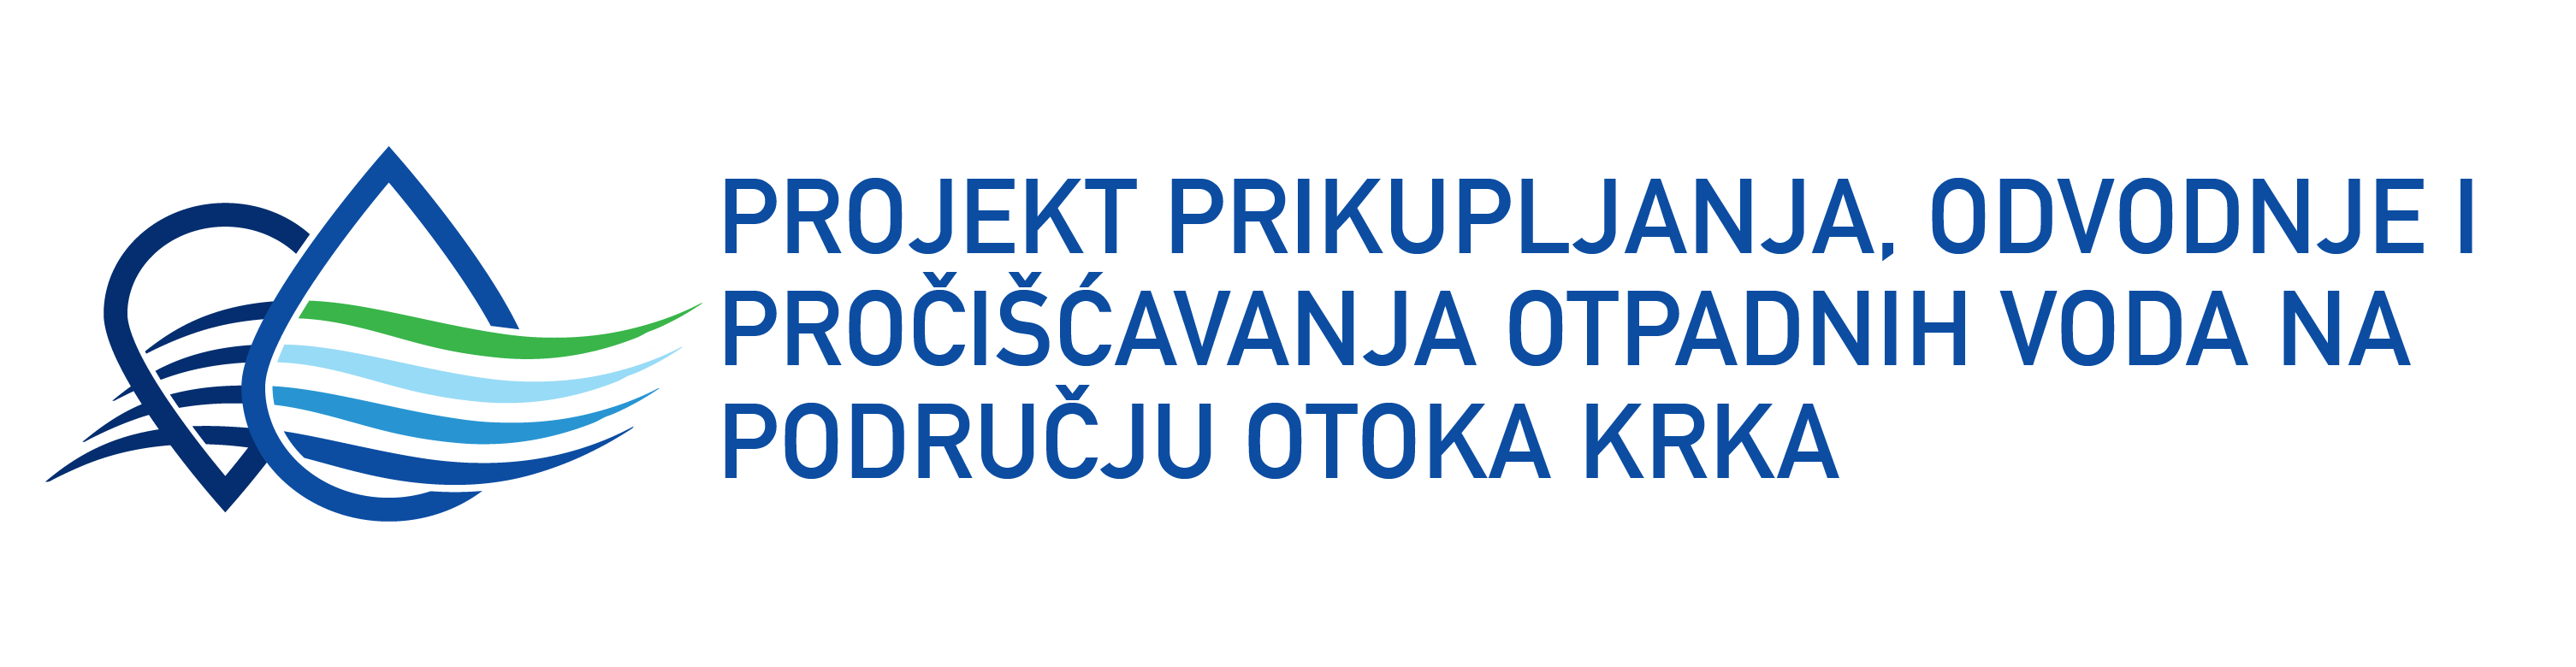 Poveznica na vanjsku stranicu EU projekta prikupljanja, odvodnje i pročišćavanja otpadnih voda na otoku Krku (otvara se u novom tabu)